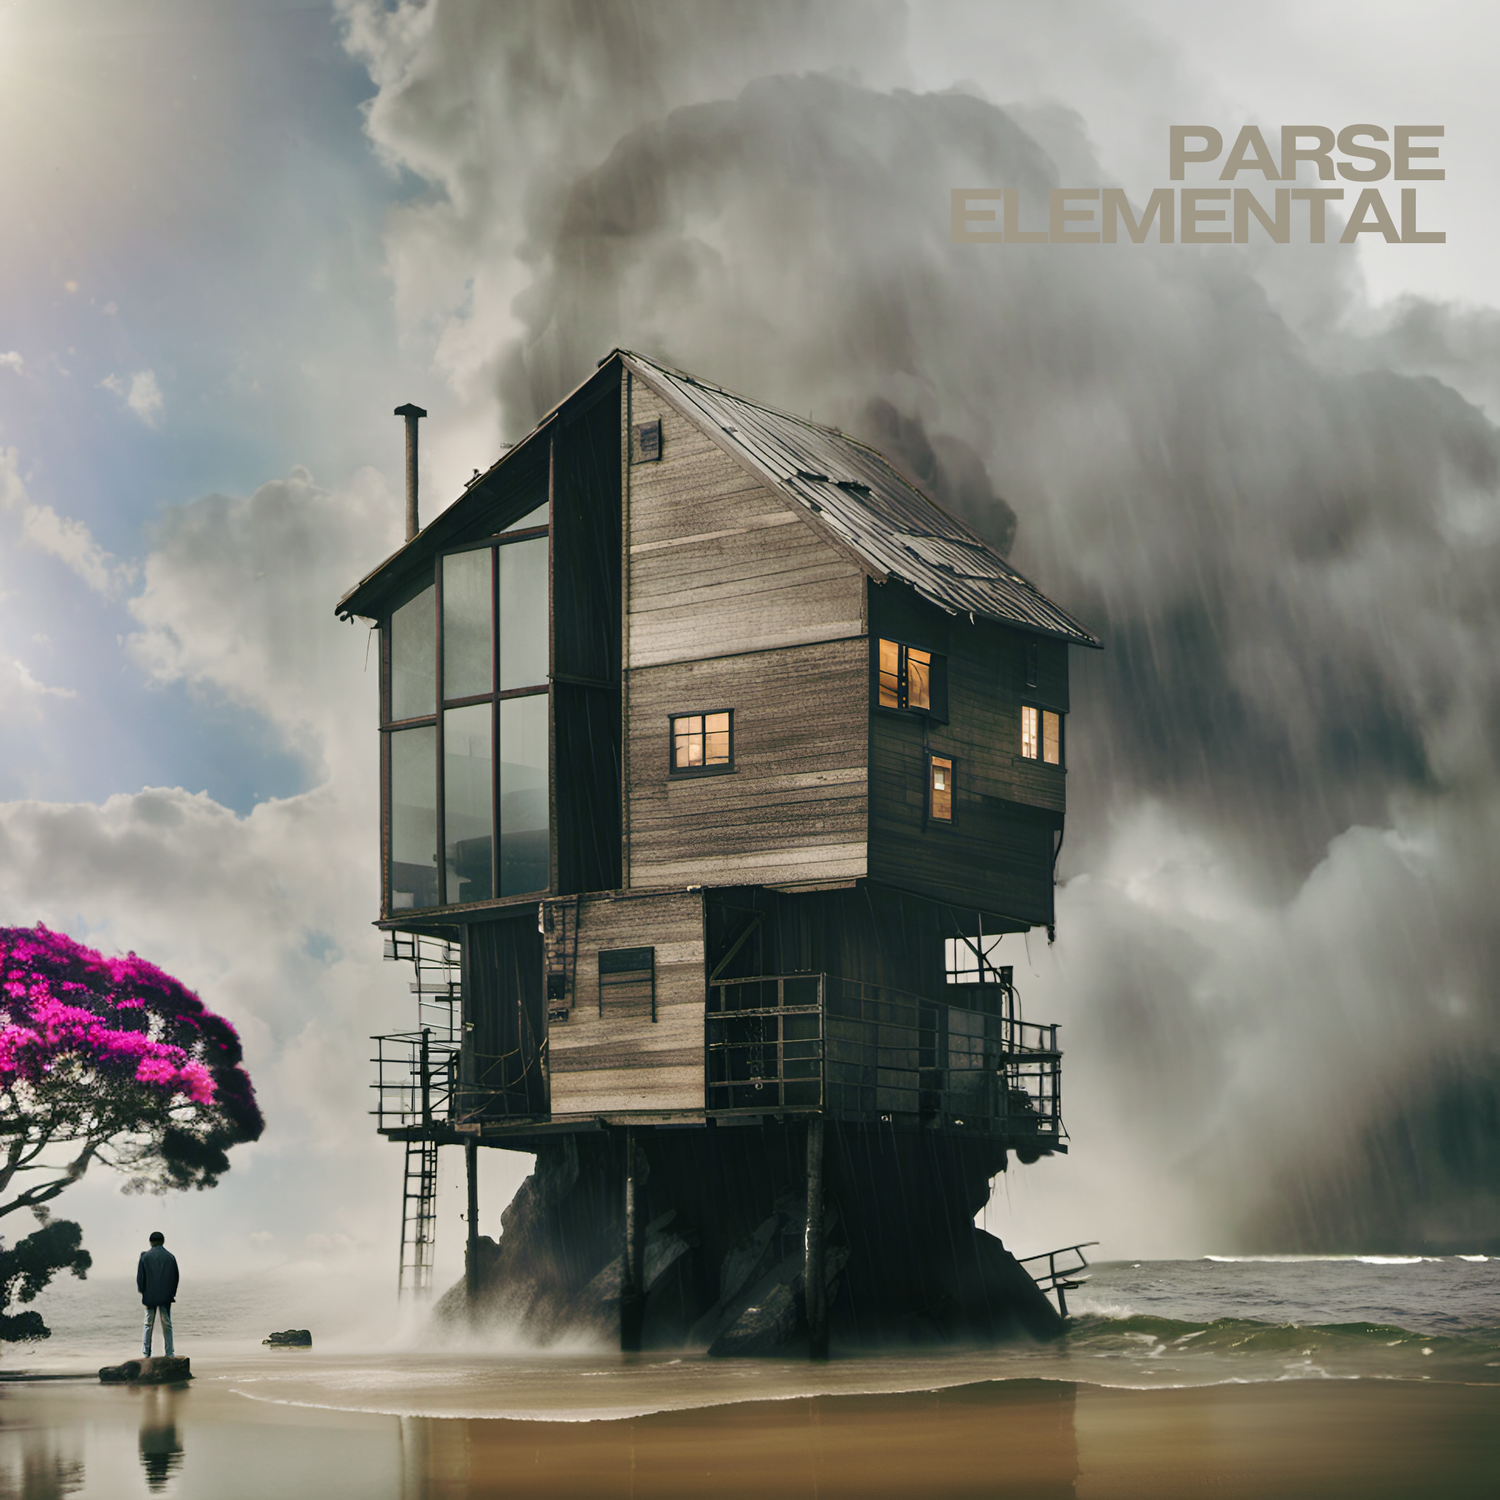 Tāmaki-based PARSE Unveils Debut Album ELEMENTAL